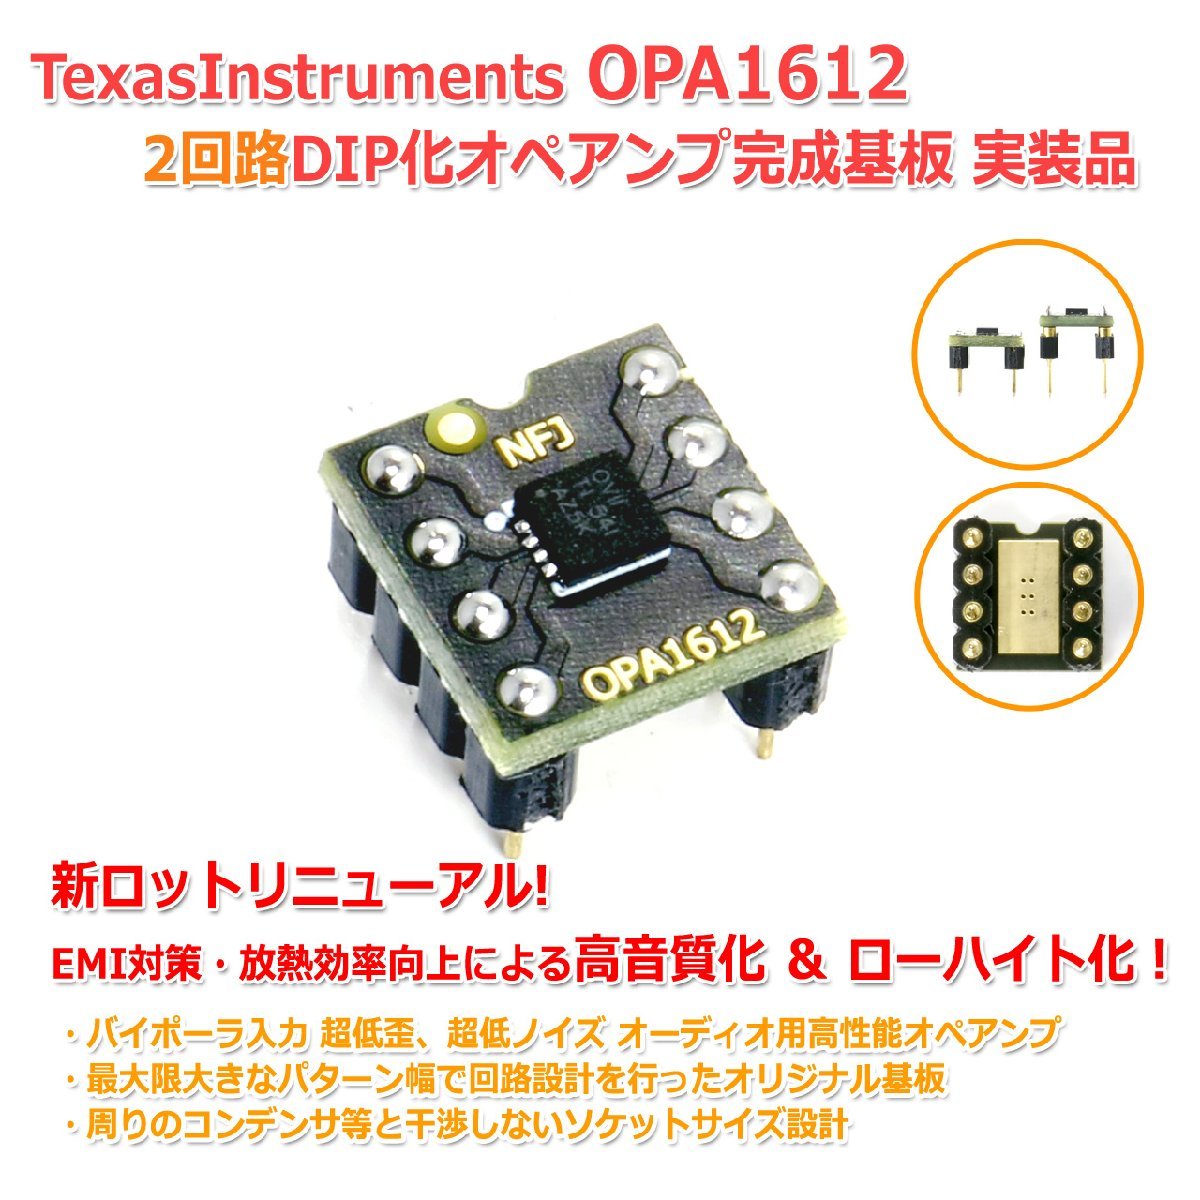 新ロット TexasInstruments OPA1612 2回路8PinDIP化オペアンプ完成基板 実装品 オーディオ用 高性能 超低歪 デュアル オペアンプ ローハイ_画像1